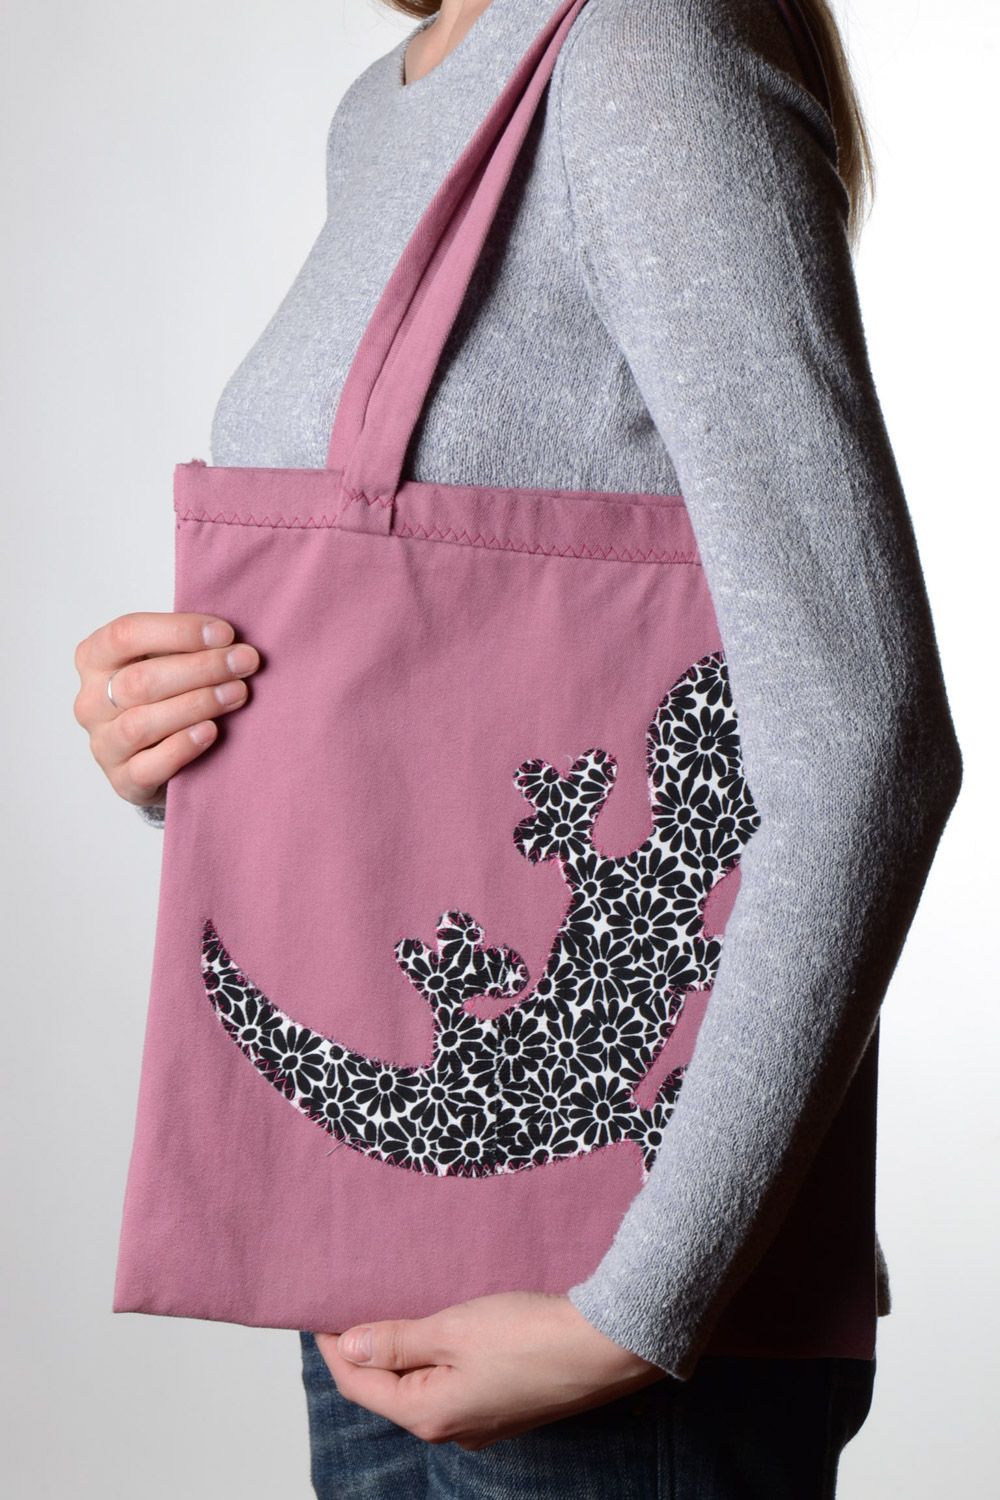 Женская сумка ручной работы из ткани с аппликацией большая розовая с ящерицей фото 1